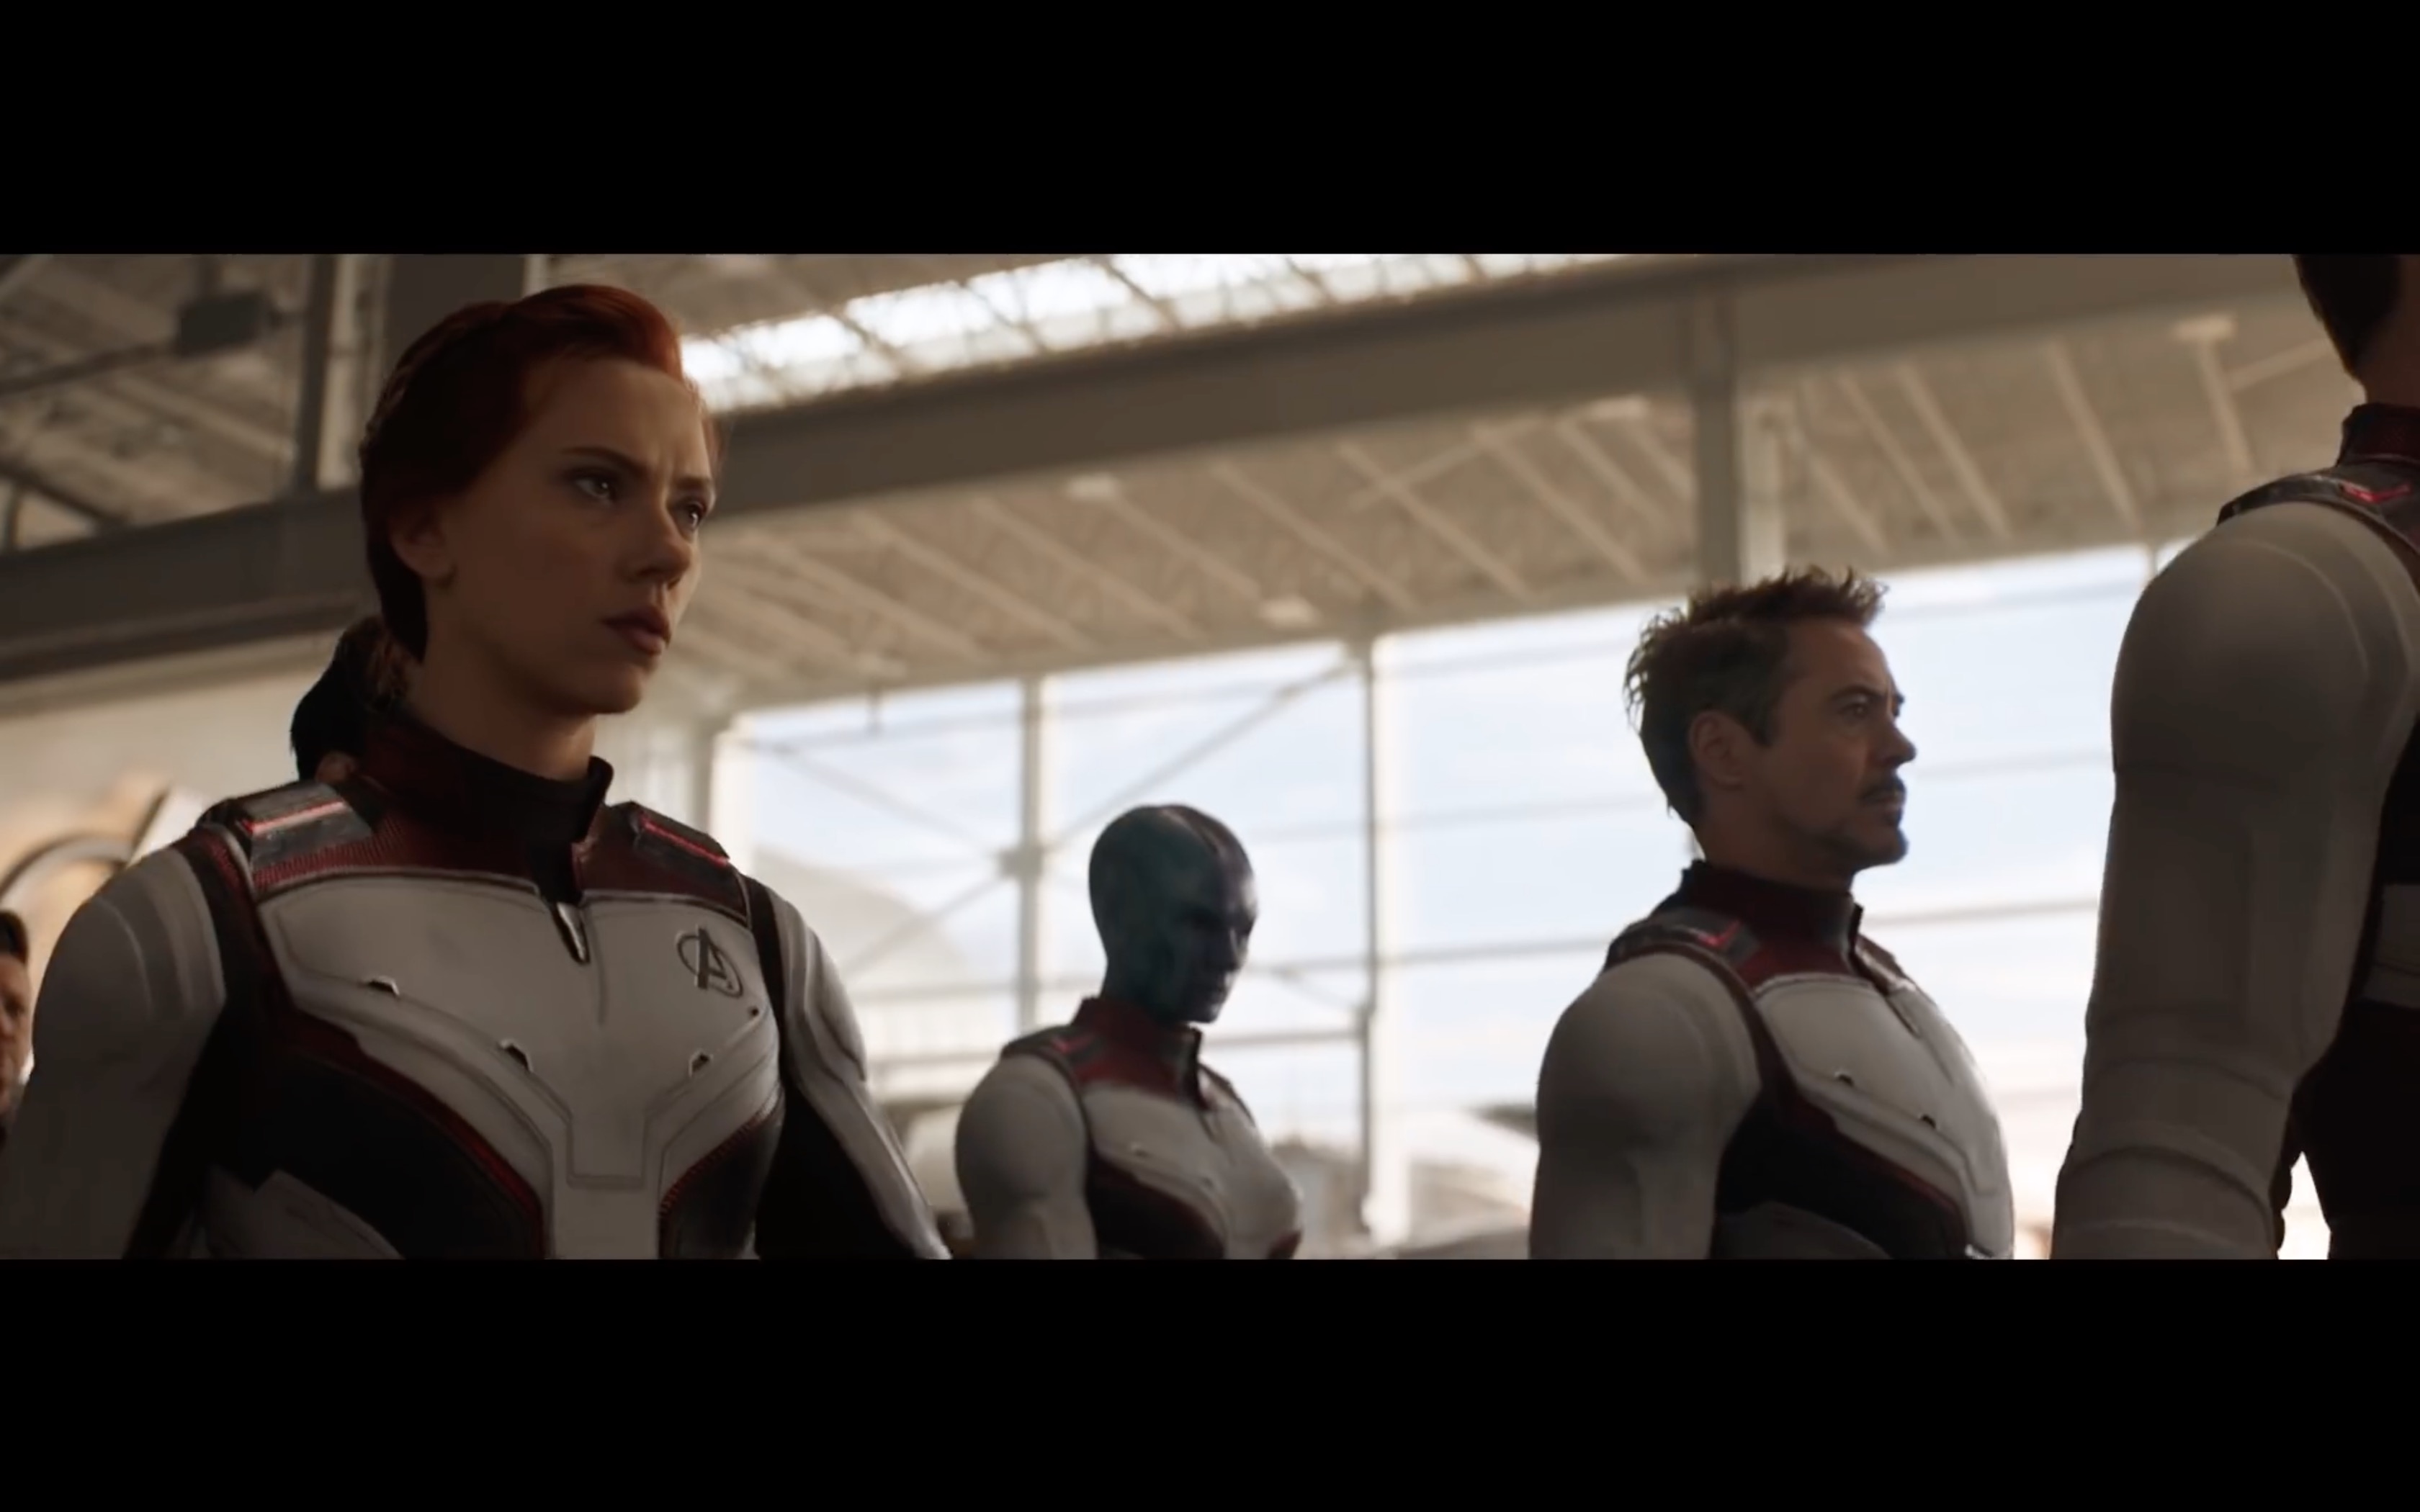 Mời xem trailer mới của 'Avengers: Endgame': Iron Man sống sót trở về Trái Đất